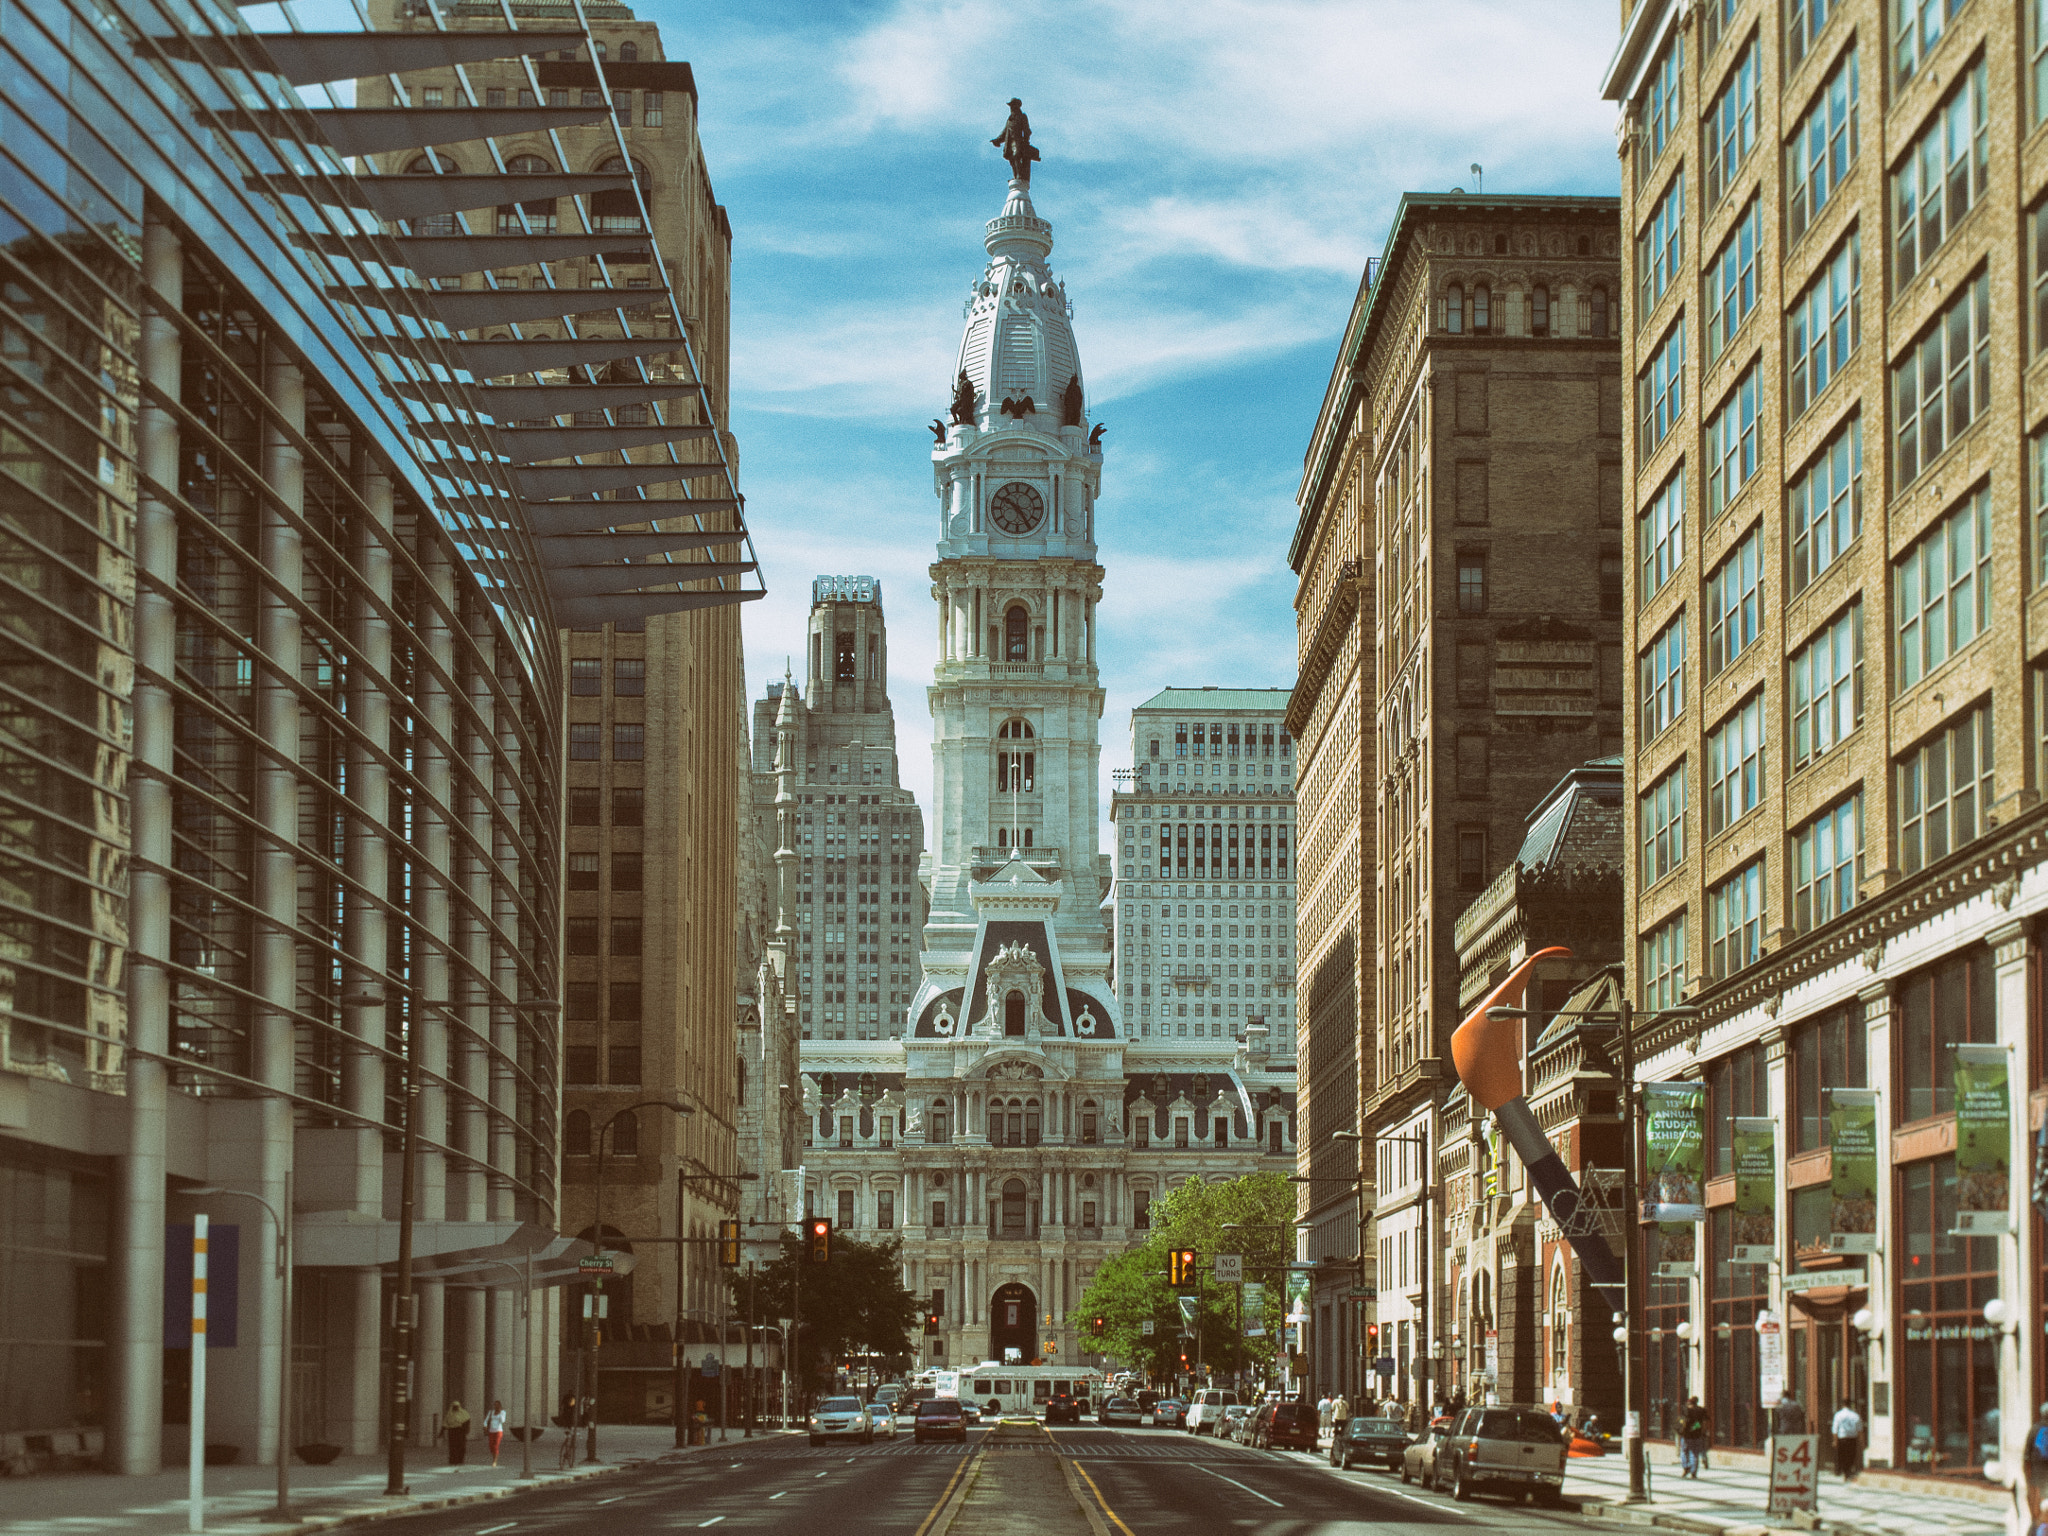 Today's Philadelphia City Hall